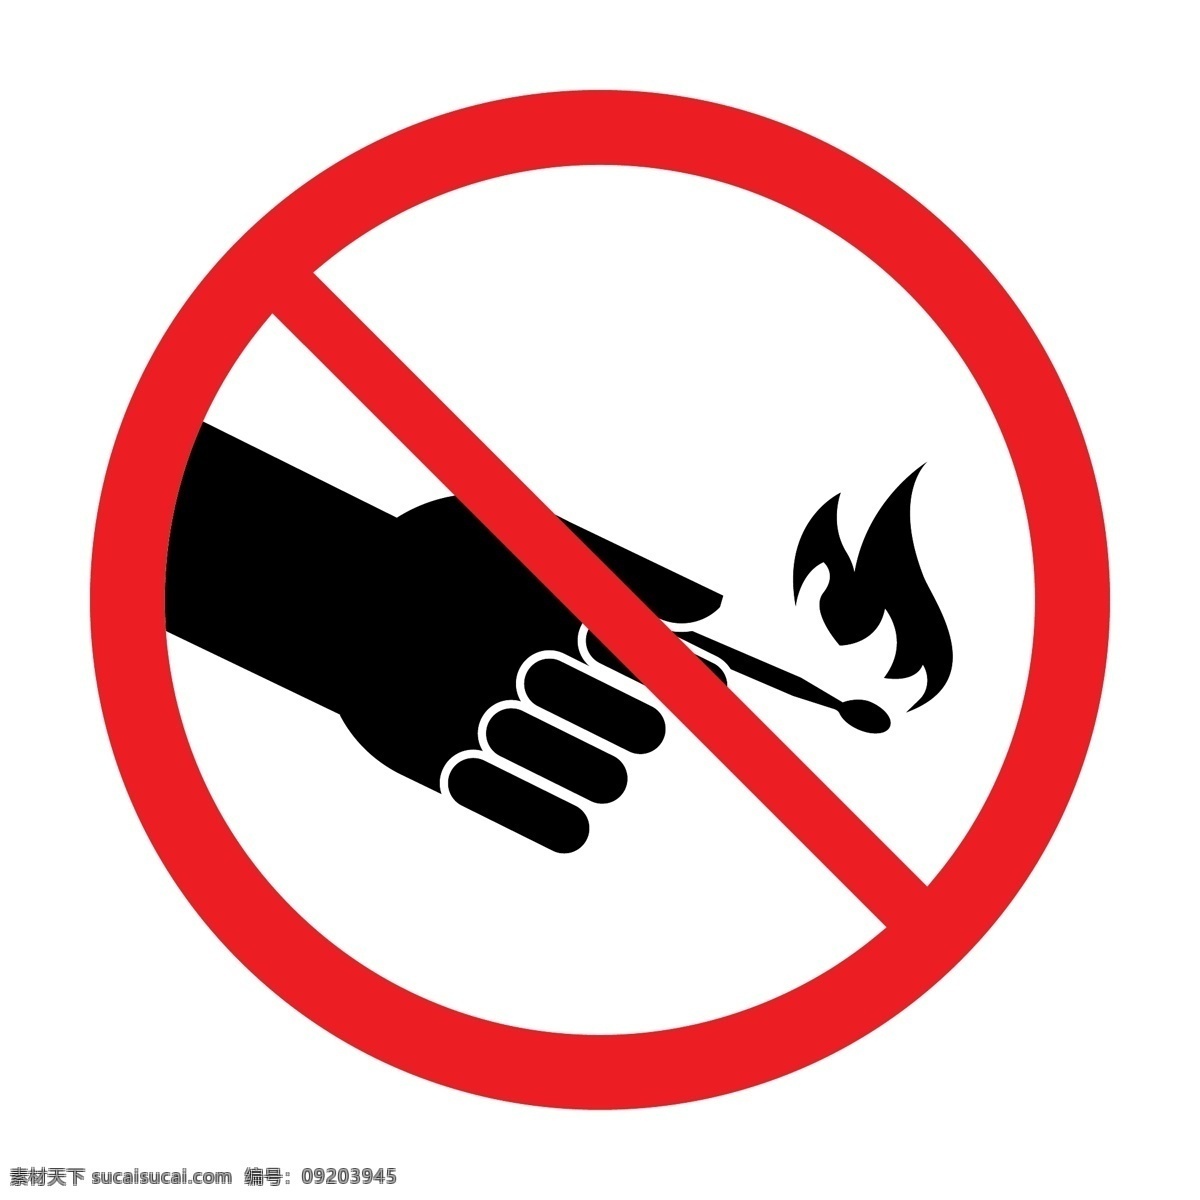 禁止图标 禁止明火 禁止标识 明火 防火 禁止点火 禁止吸烟 禁止火源 防止火灾 森林防火